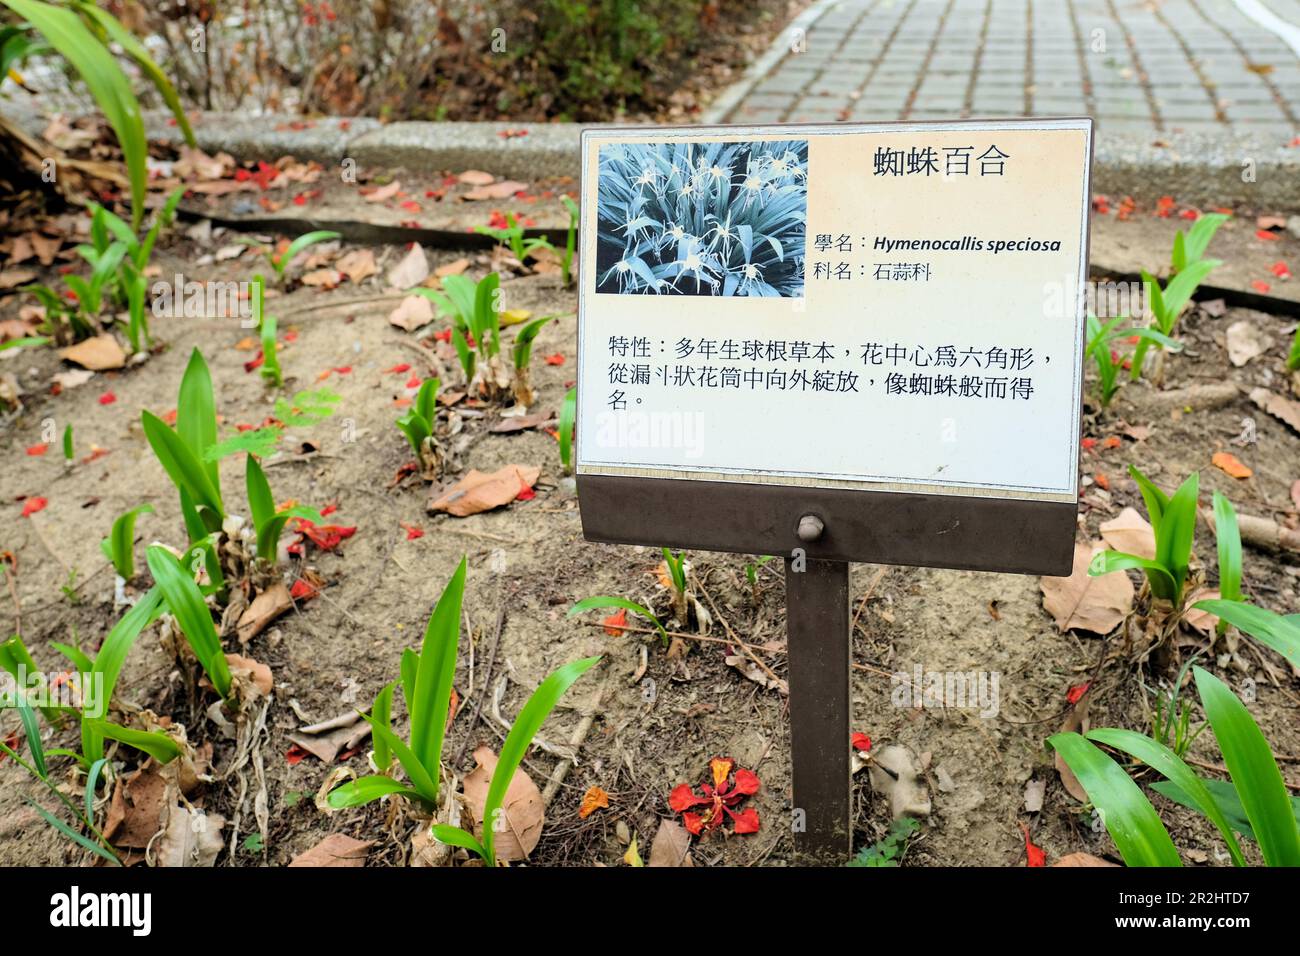 Lateinisches botanisches Namensschild und Pflanzenbeschreibung auf Chinesisch für Hymenocallis speciosa, grüne Spinnenlilie, im Xingfu-Park in Kaohsiung, Taiwan. Stockfoto